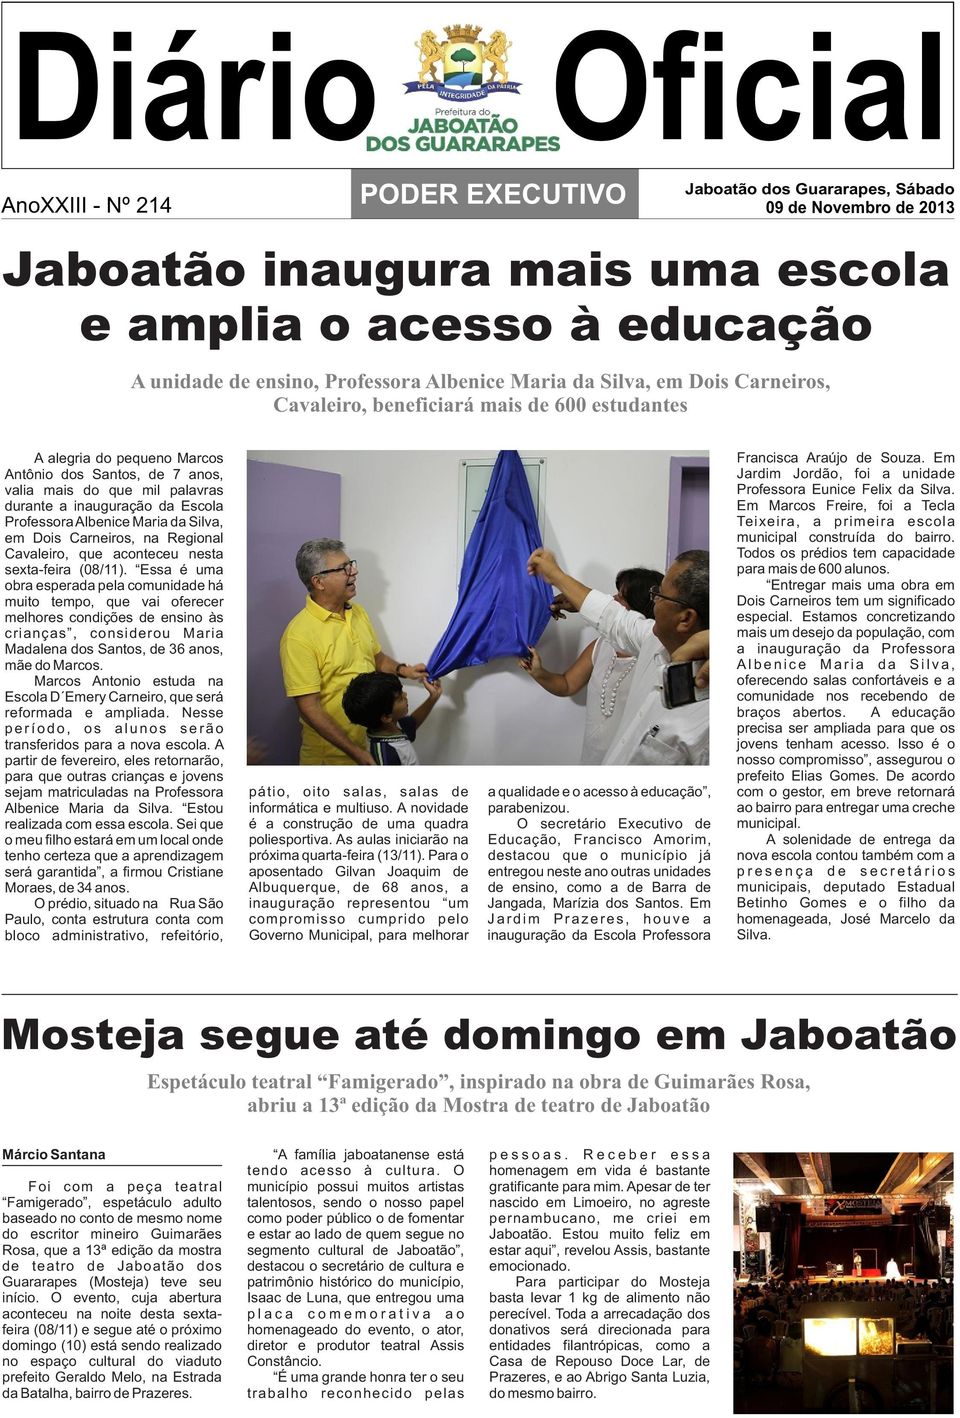 inauguração da Escola Professora Albenice Maria da Silva, em Dois Carneiros, na Regional Cavaleiro, que aconteceu nesta sexta-feira (08/11).